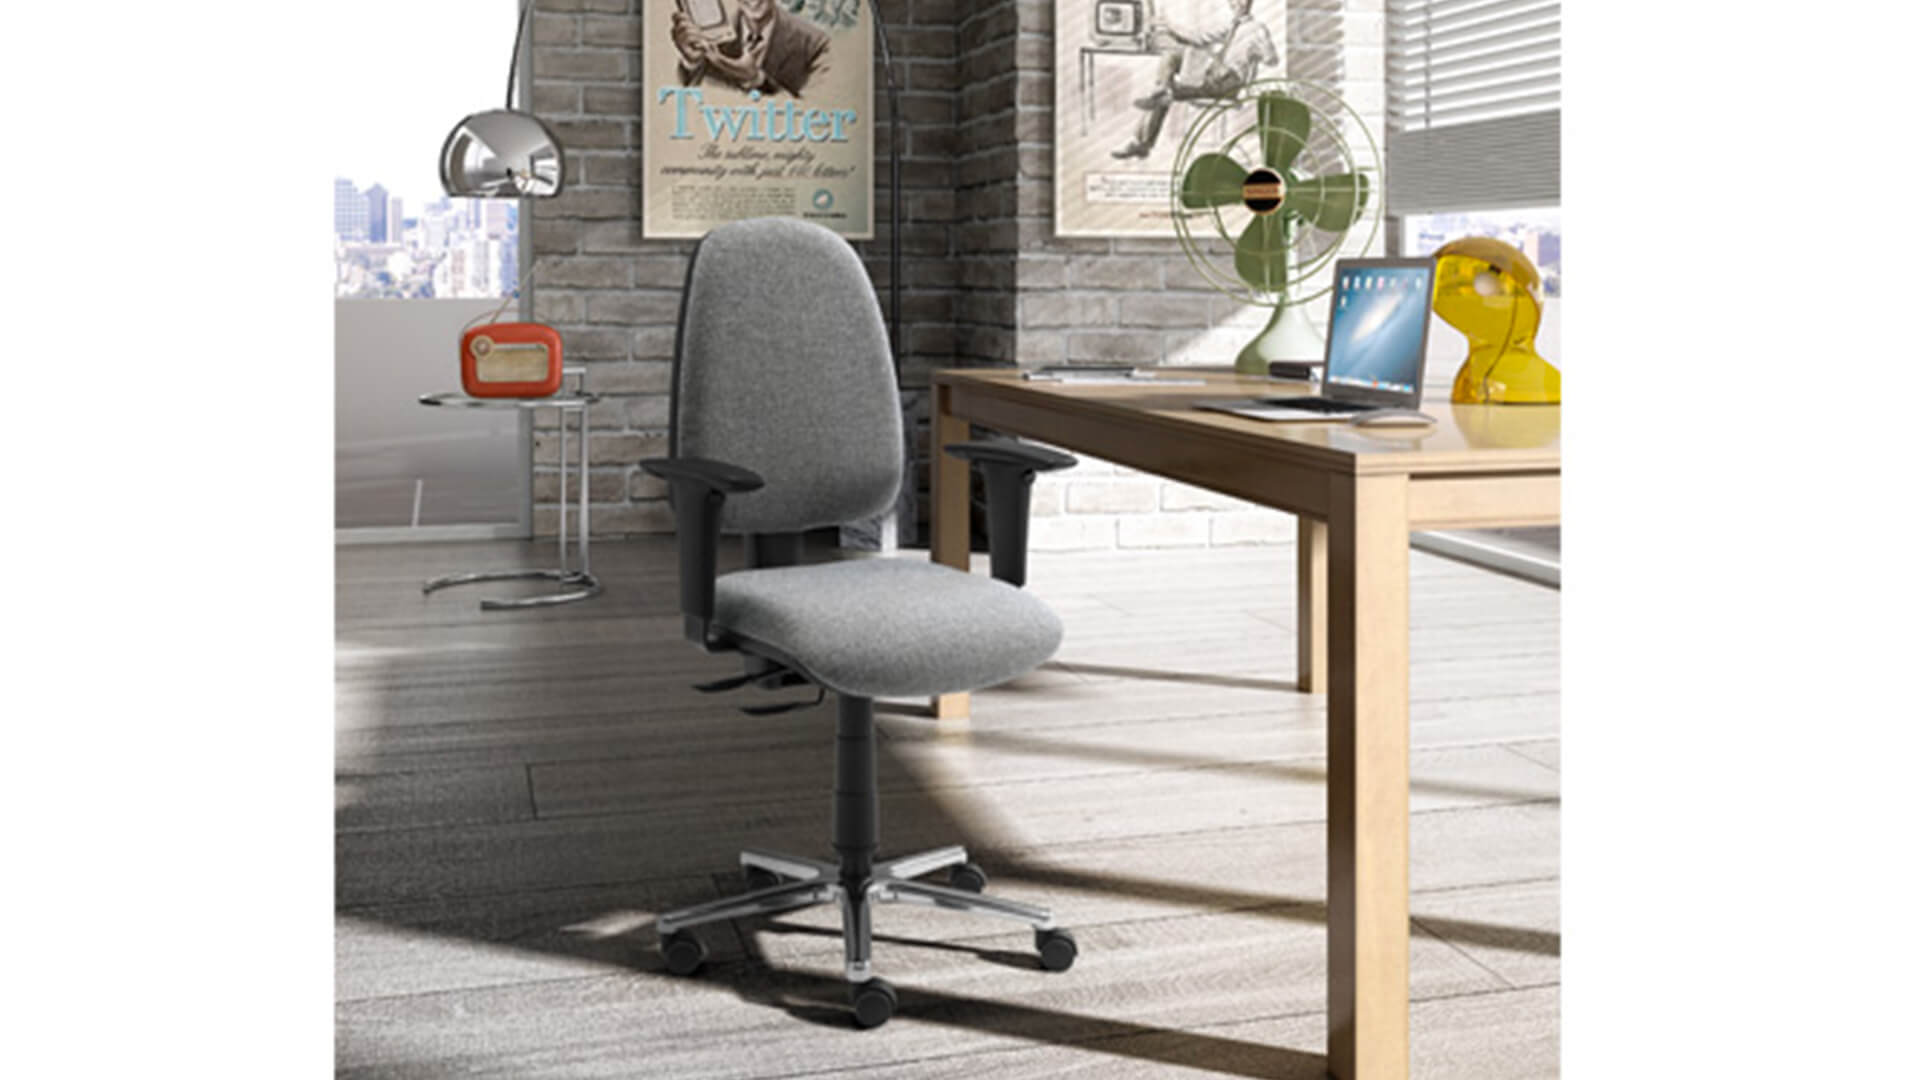 Blog IDW - Come arredare una perfetta zona ufficio in casa